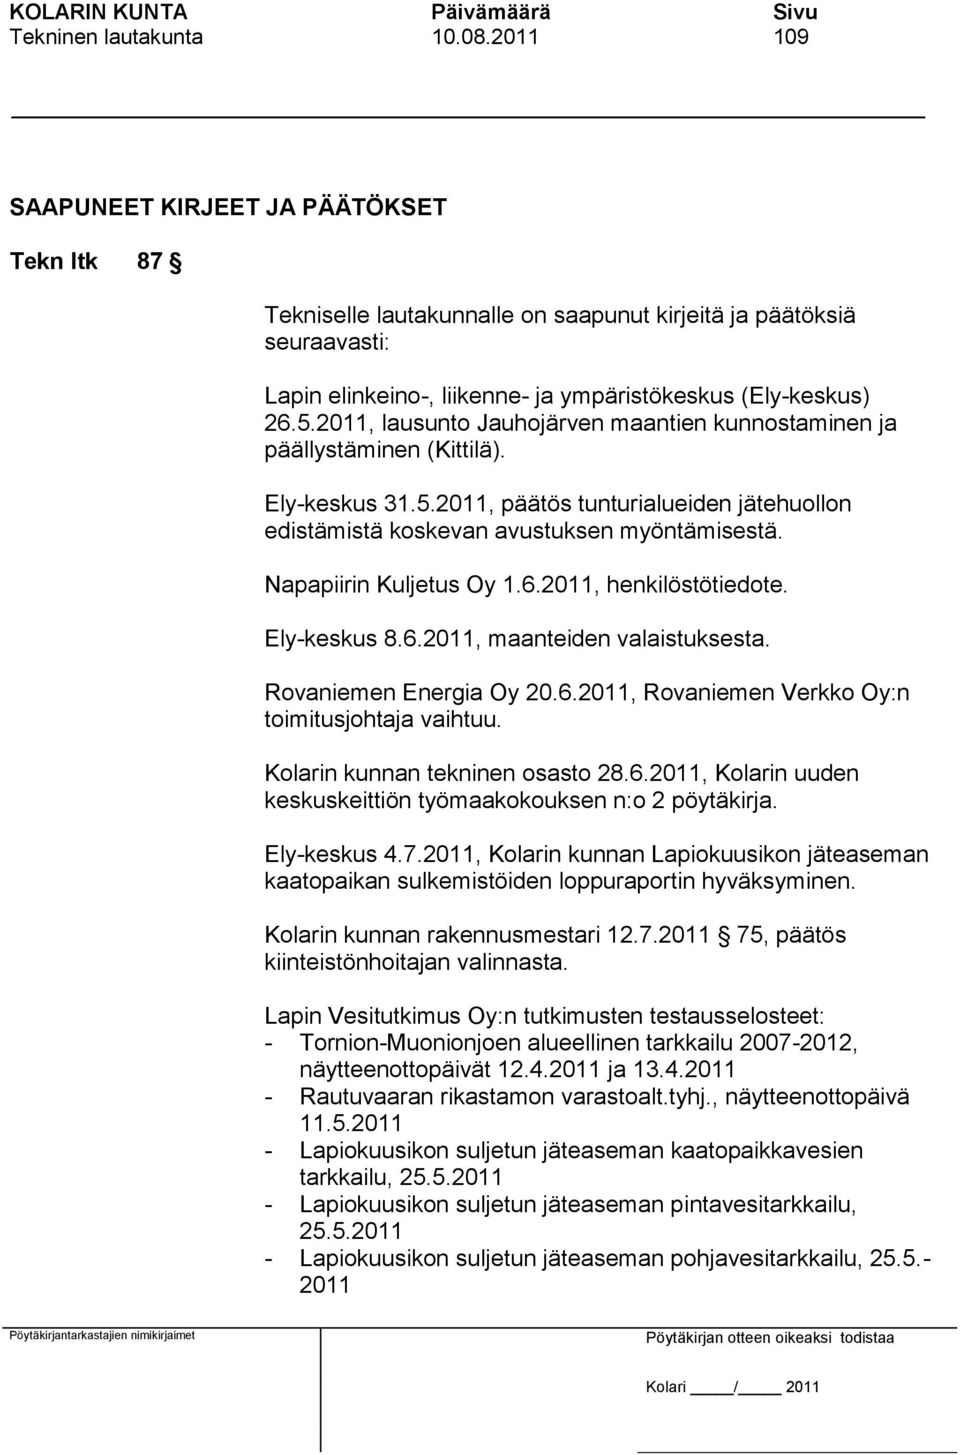 2011, lausunto Jauhojärven maantien kunnostaminen ja päällystäminen (Kittilä). Ely-keskus 31.5.2011, päätös tunturialueiden jätehuollon edistämistä koskevan avustuksen myöntämisestä.